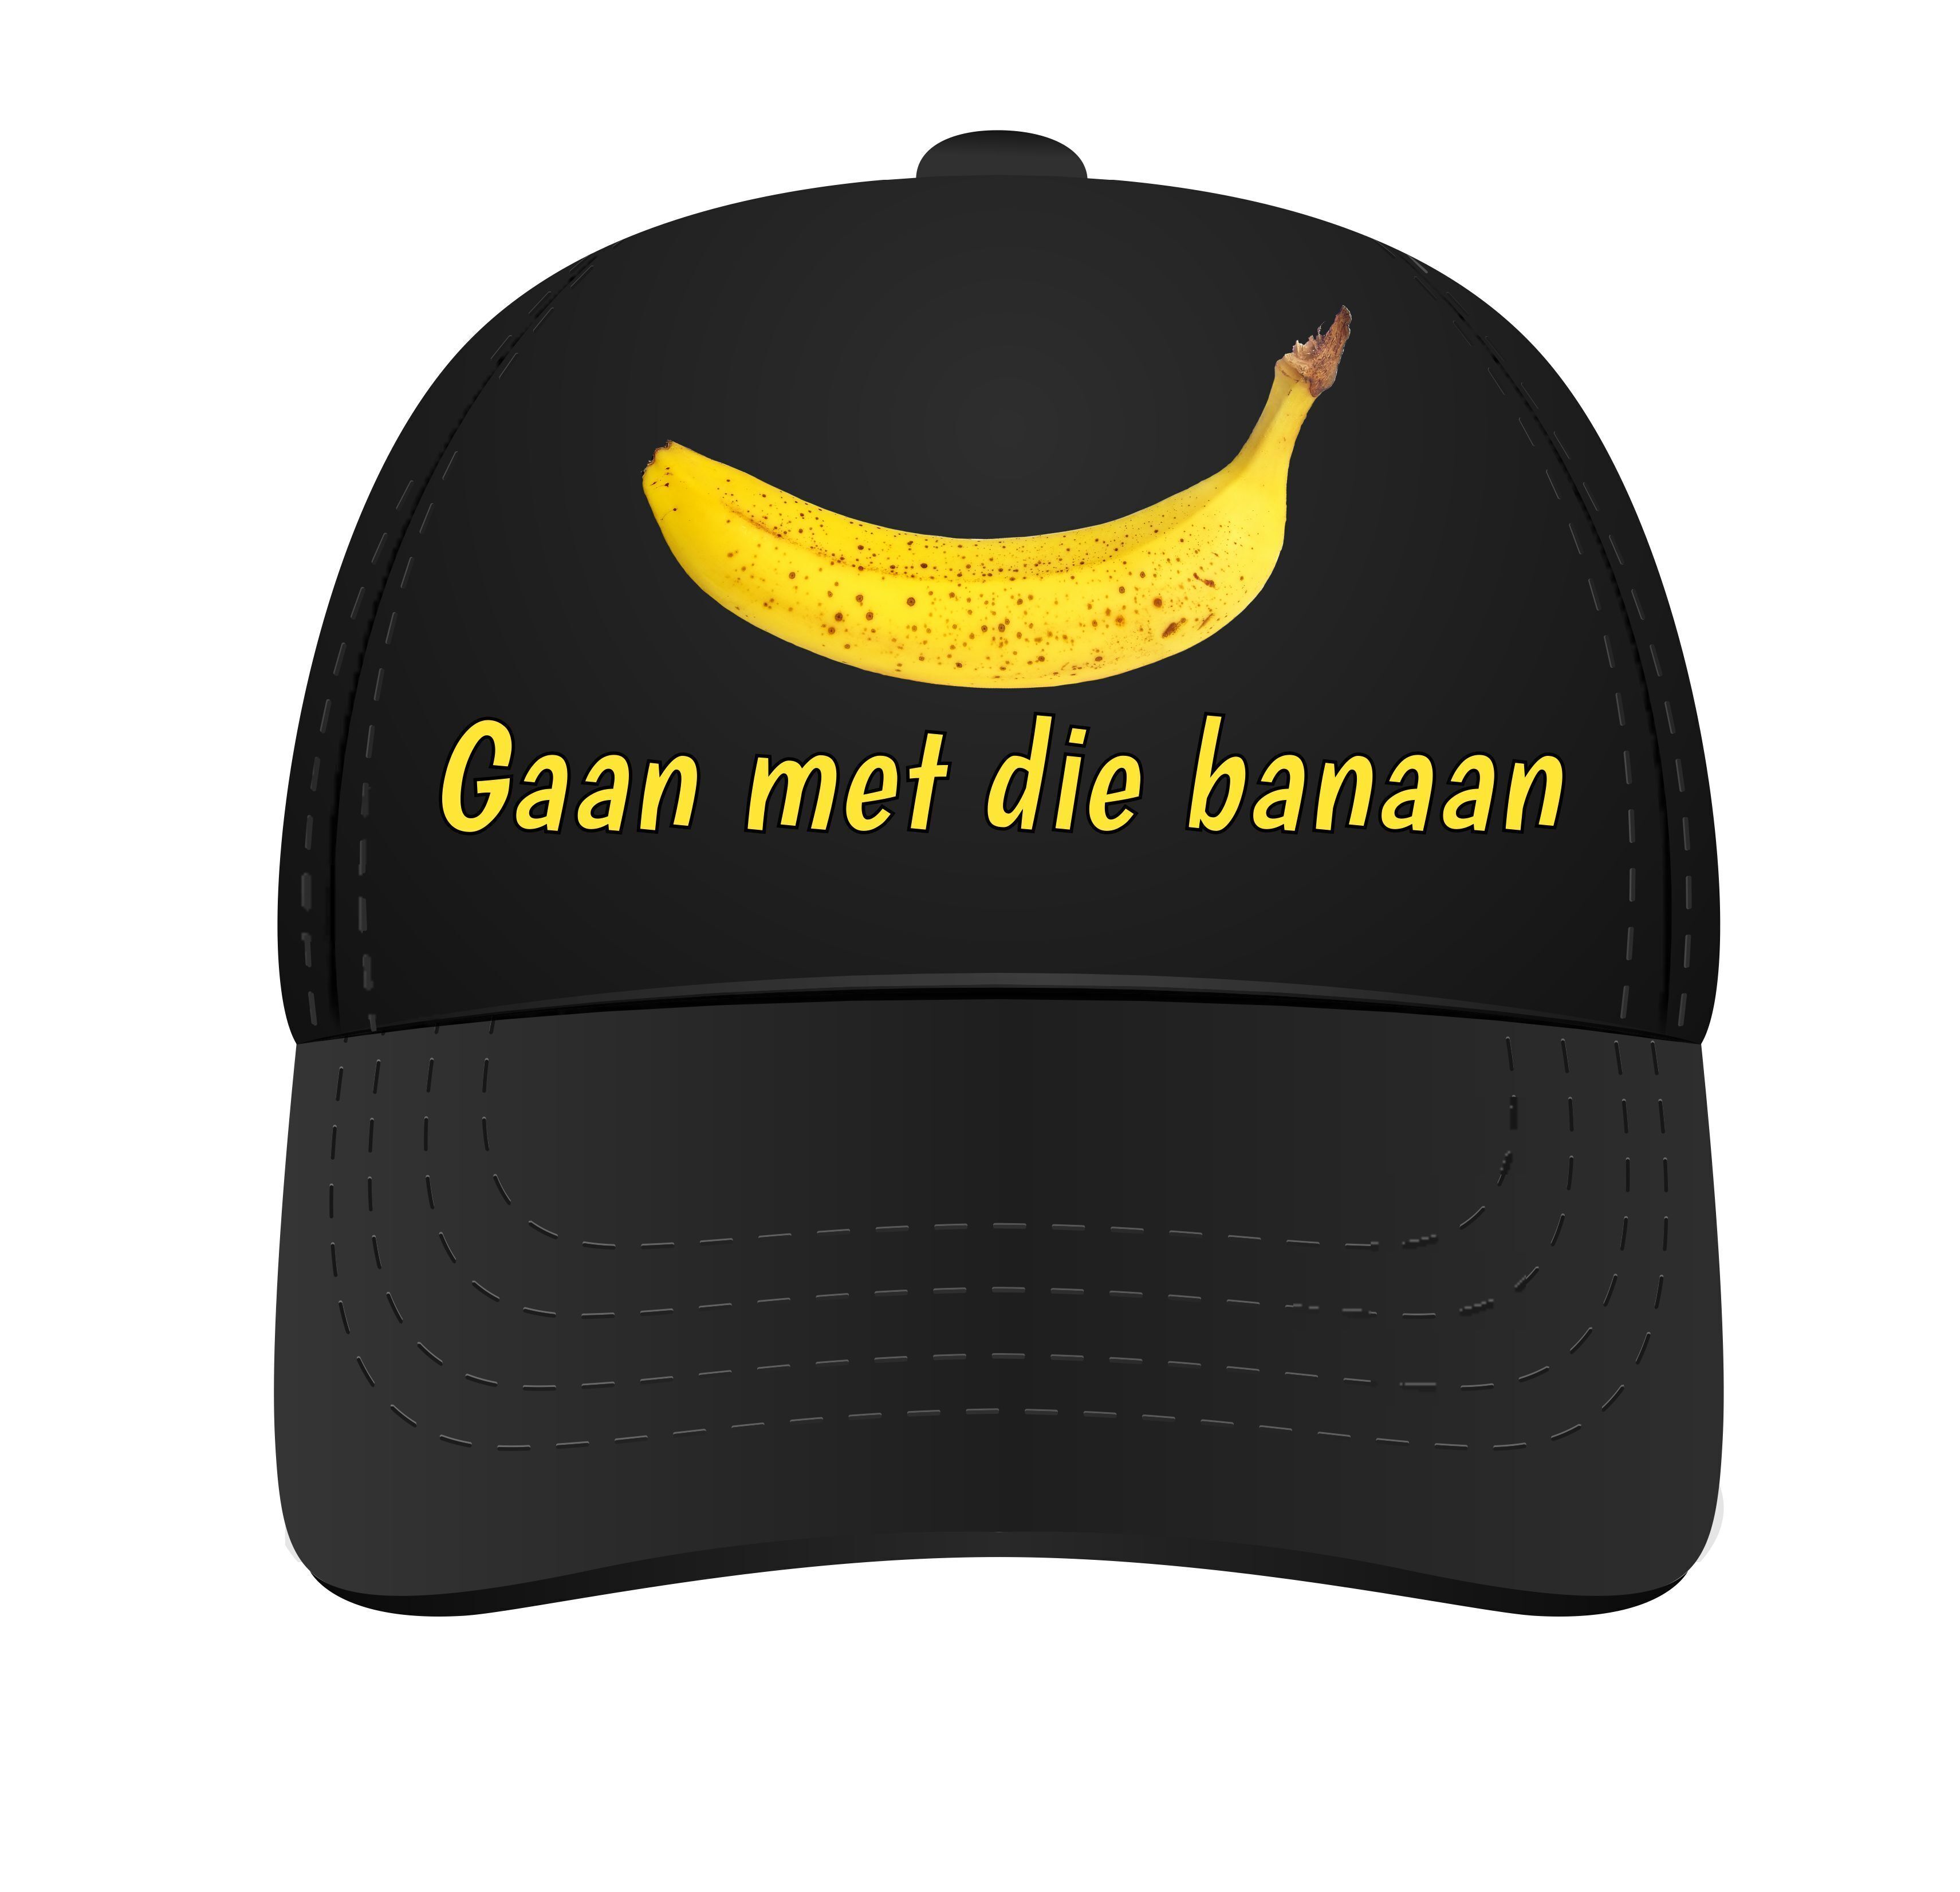 Pet gaan met die banaan